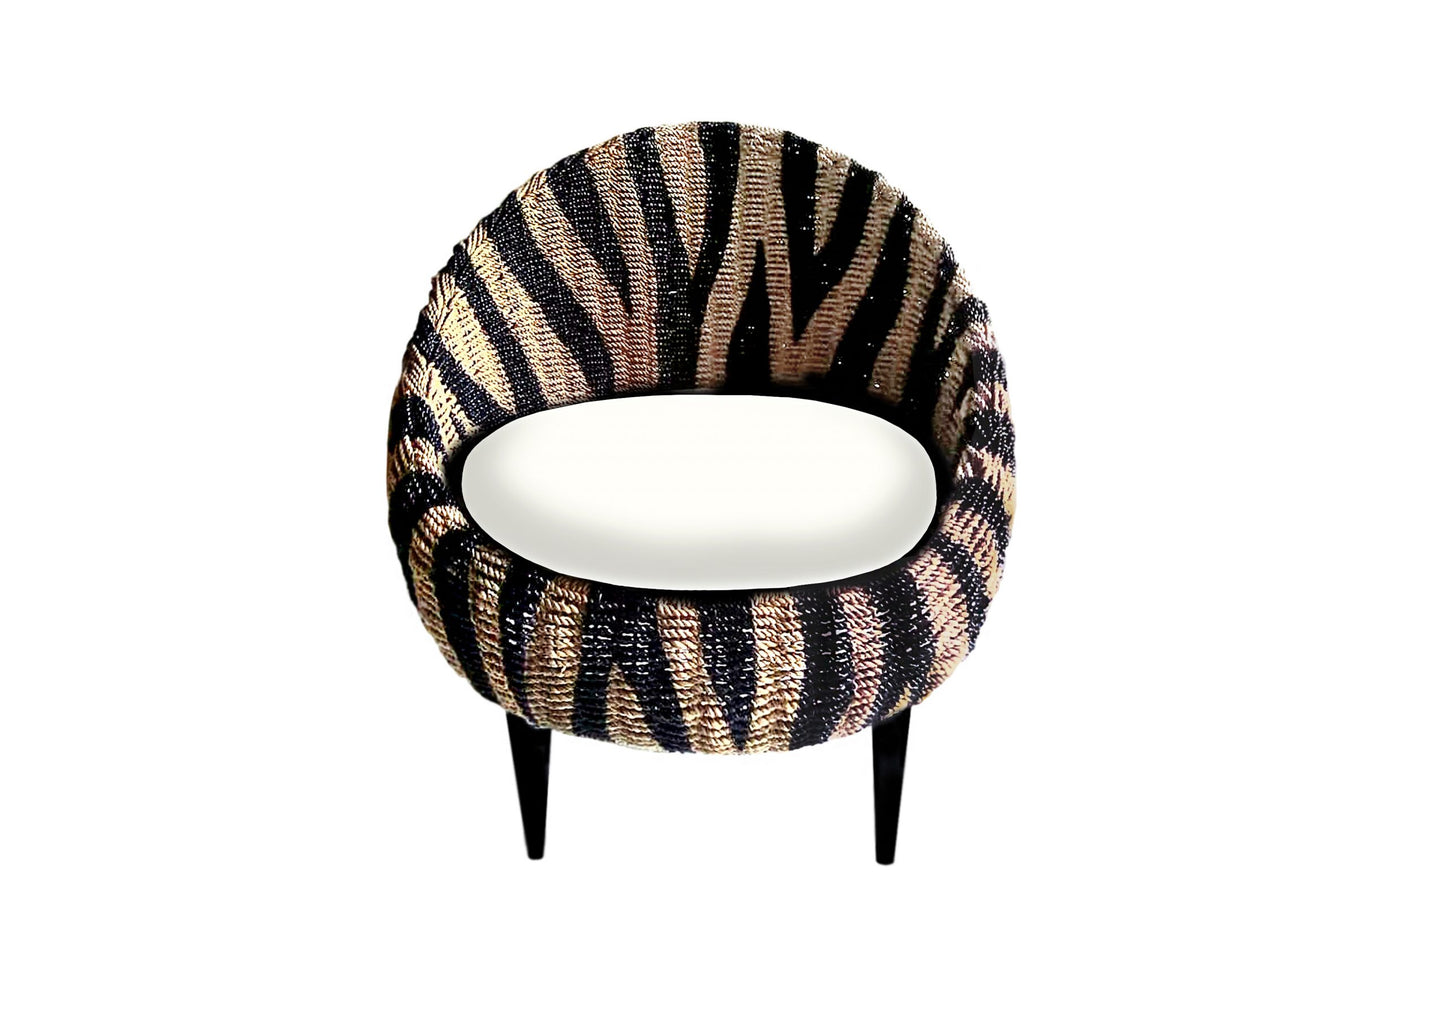 Zane Chair with stripes